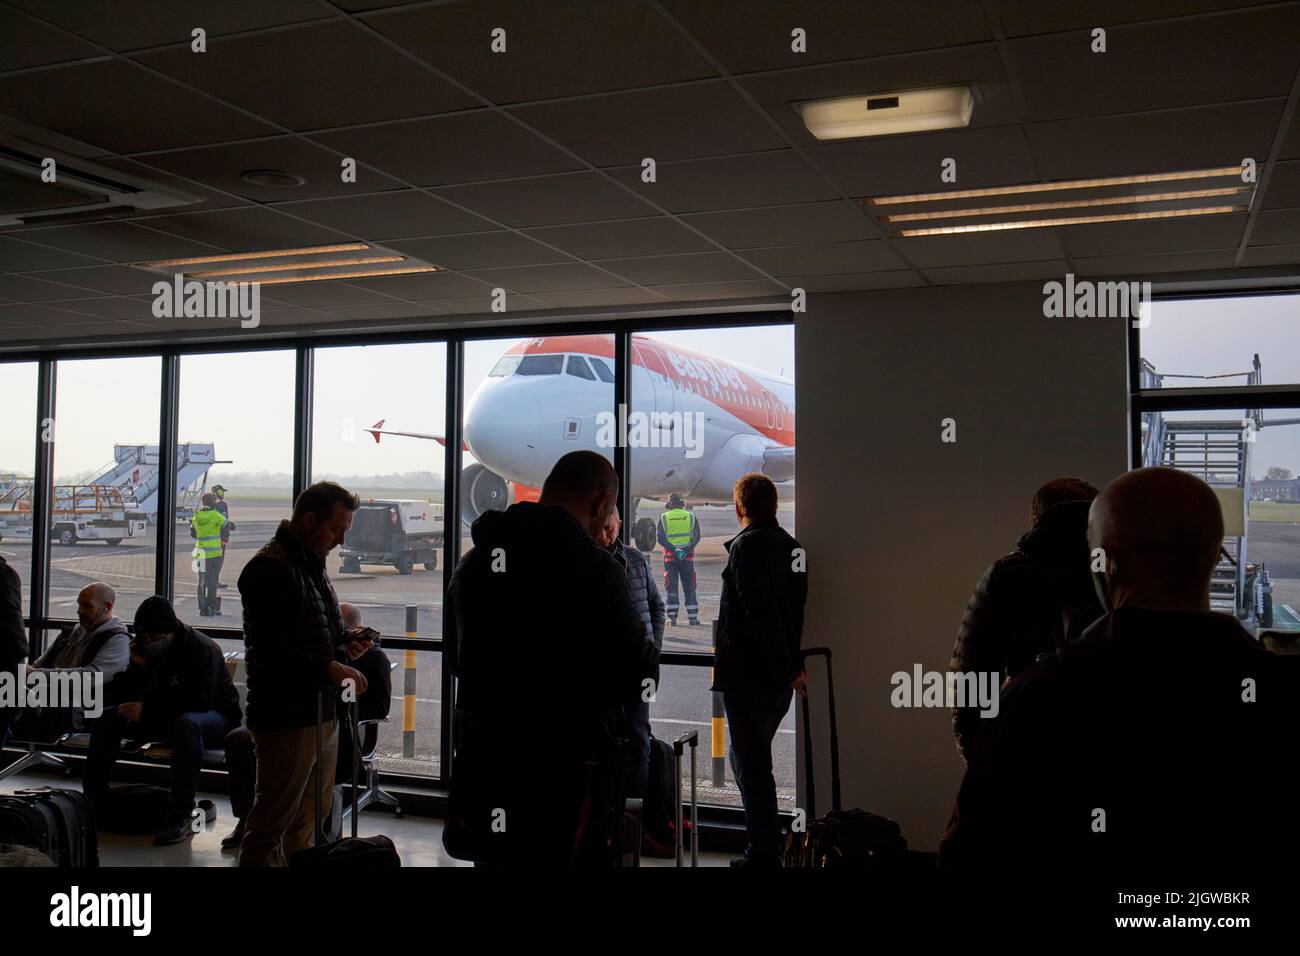 passeggeri easyjet in attesa della partenza del volo aereo all'aeroporto internazionale di belfast nel regno unito Foto Stock